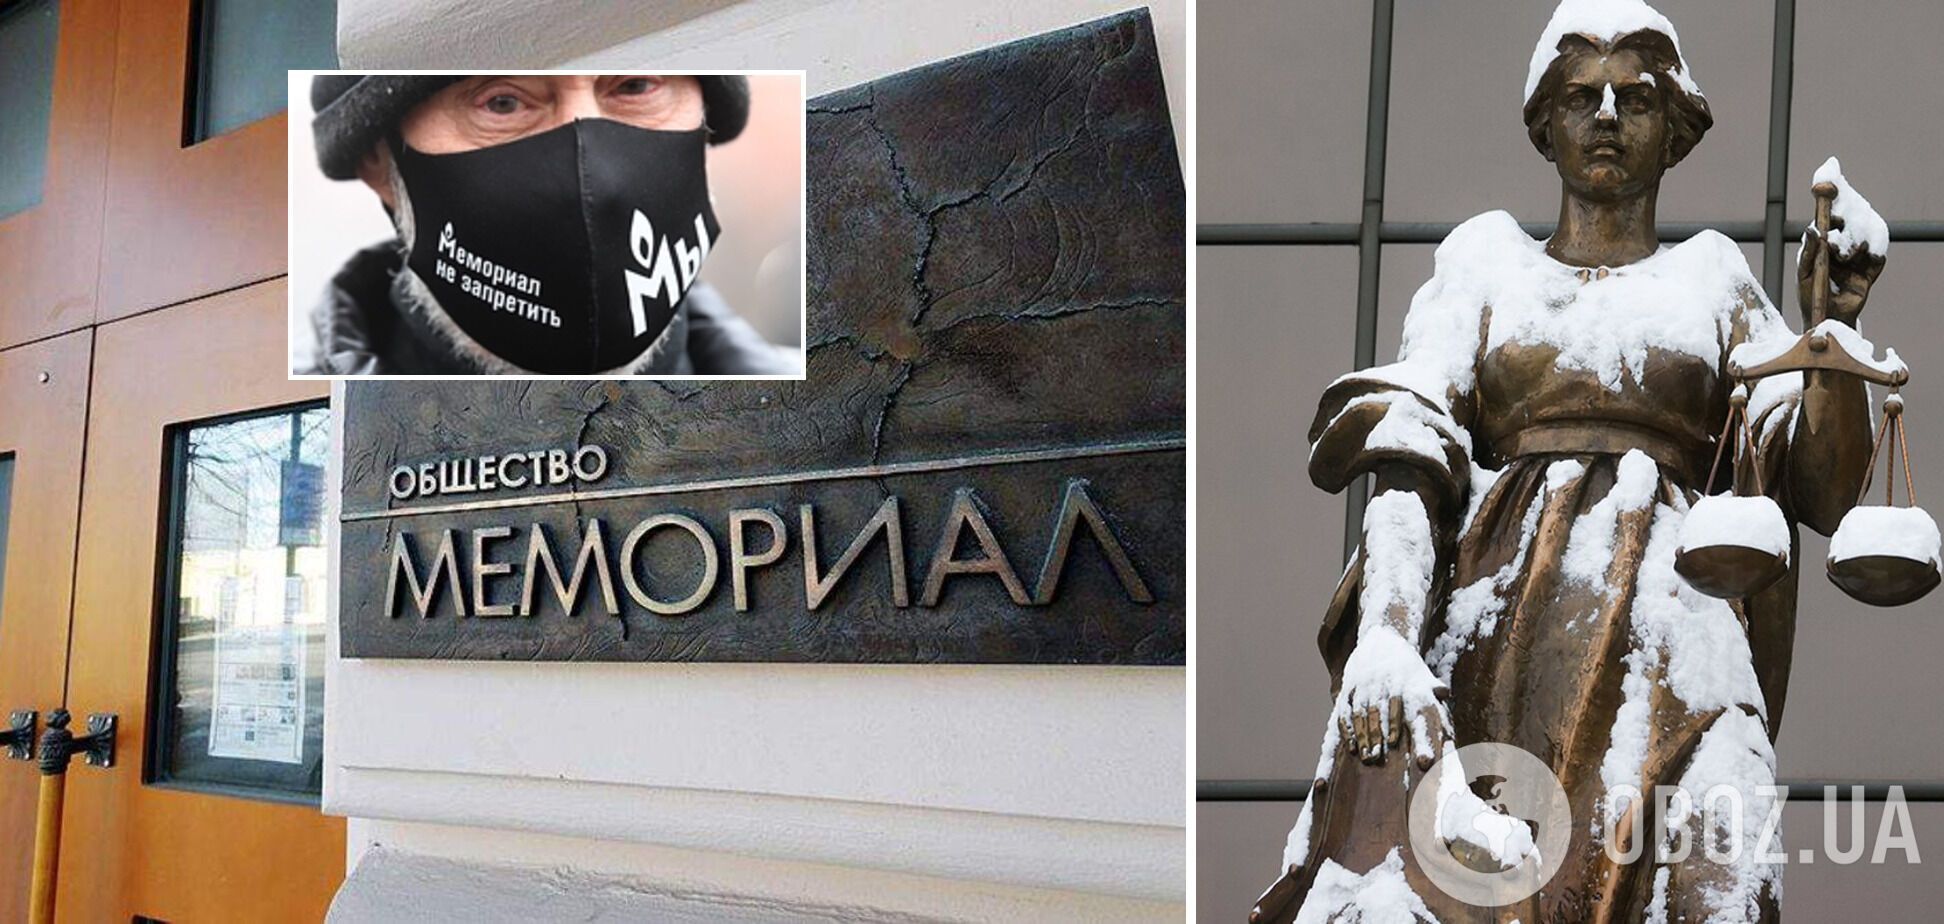 Старейшую в России правозащитную организацию "Мемориал" закрыли решением Верховного суда РФ